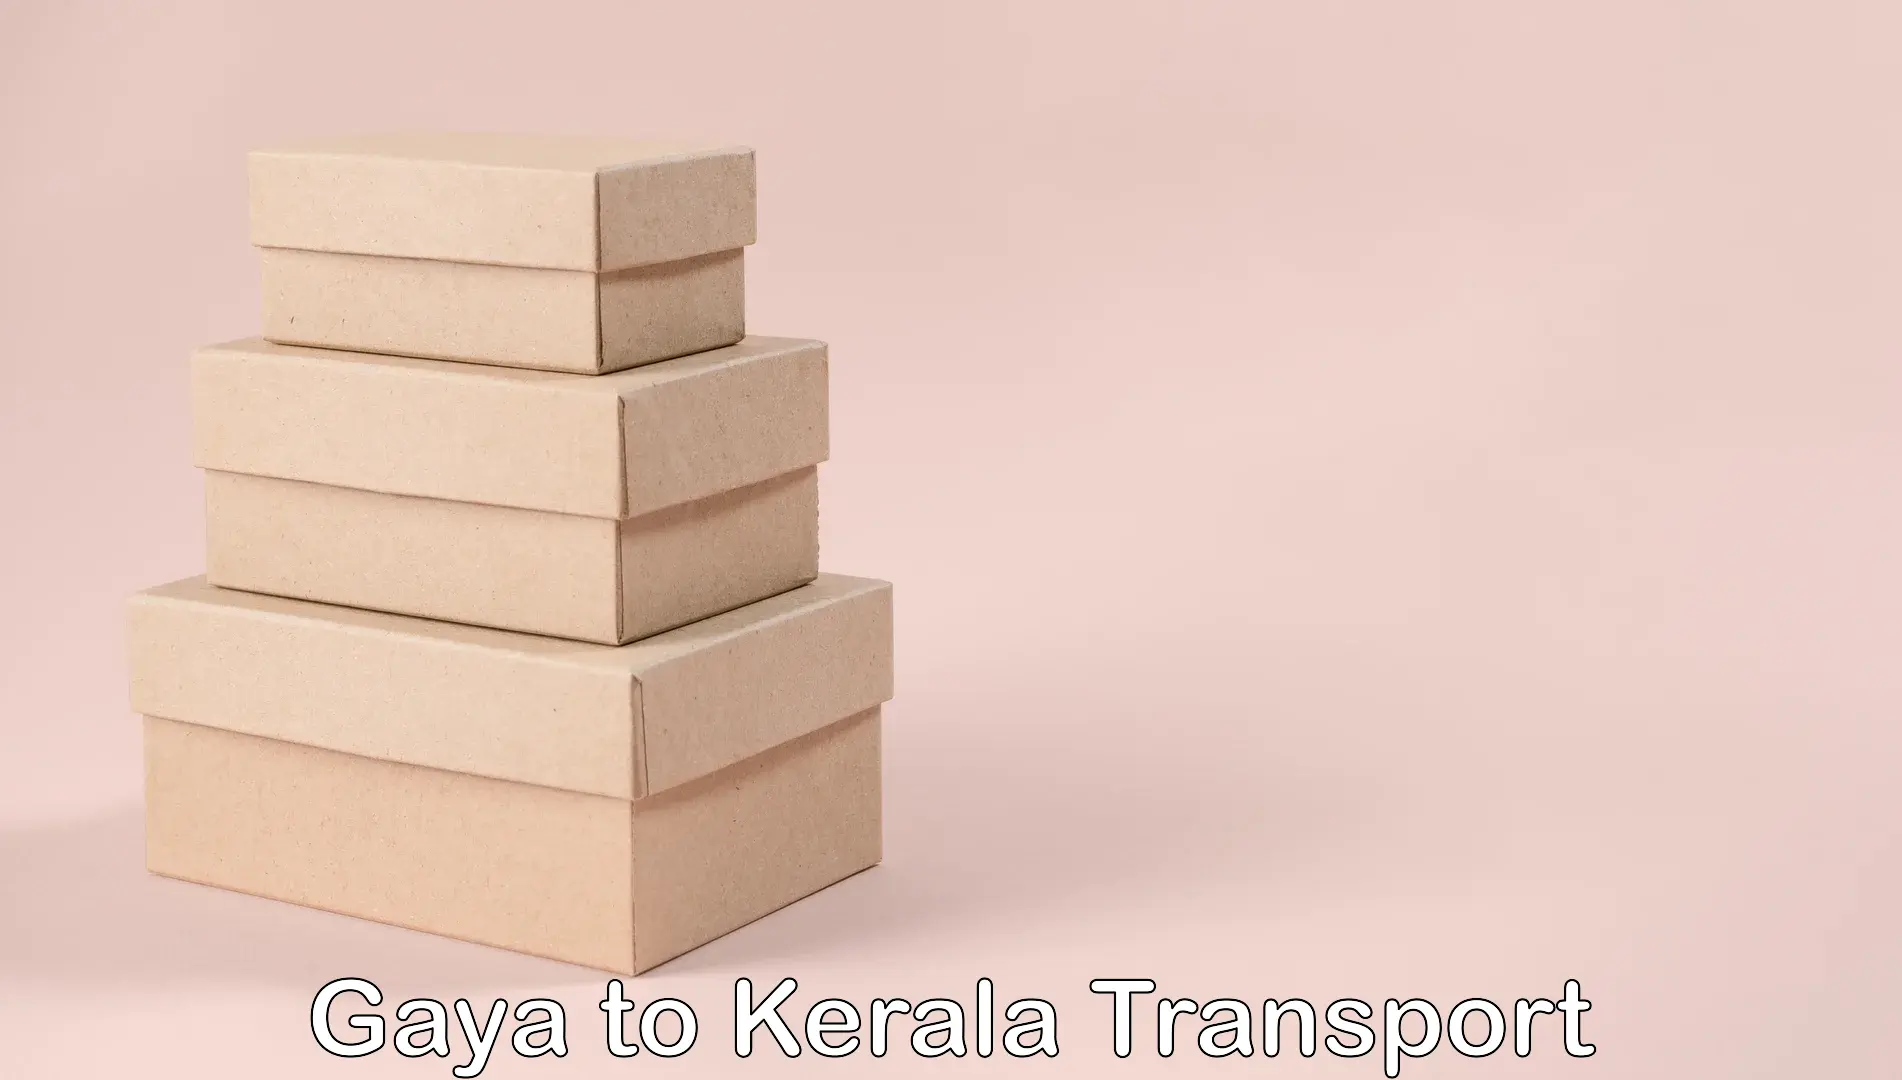 All India transport service Gaya to Parakkadavu